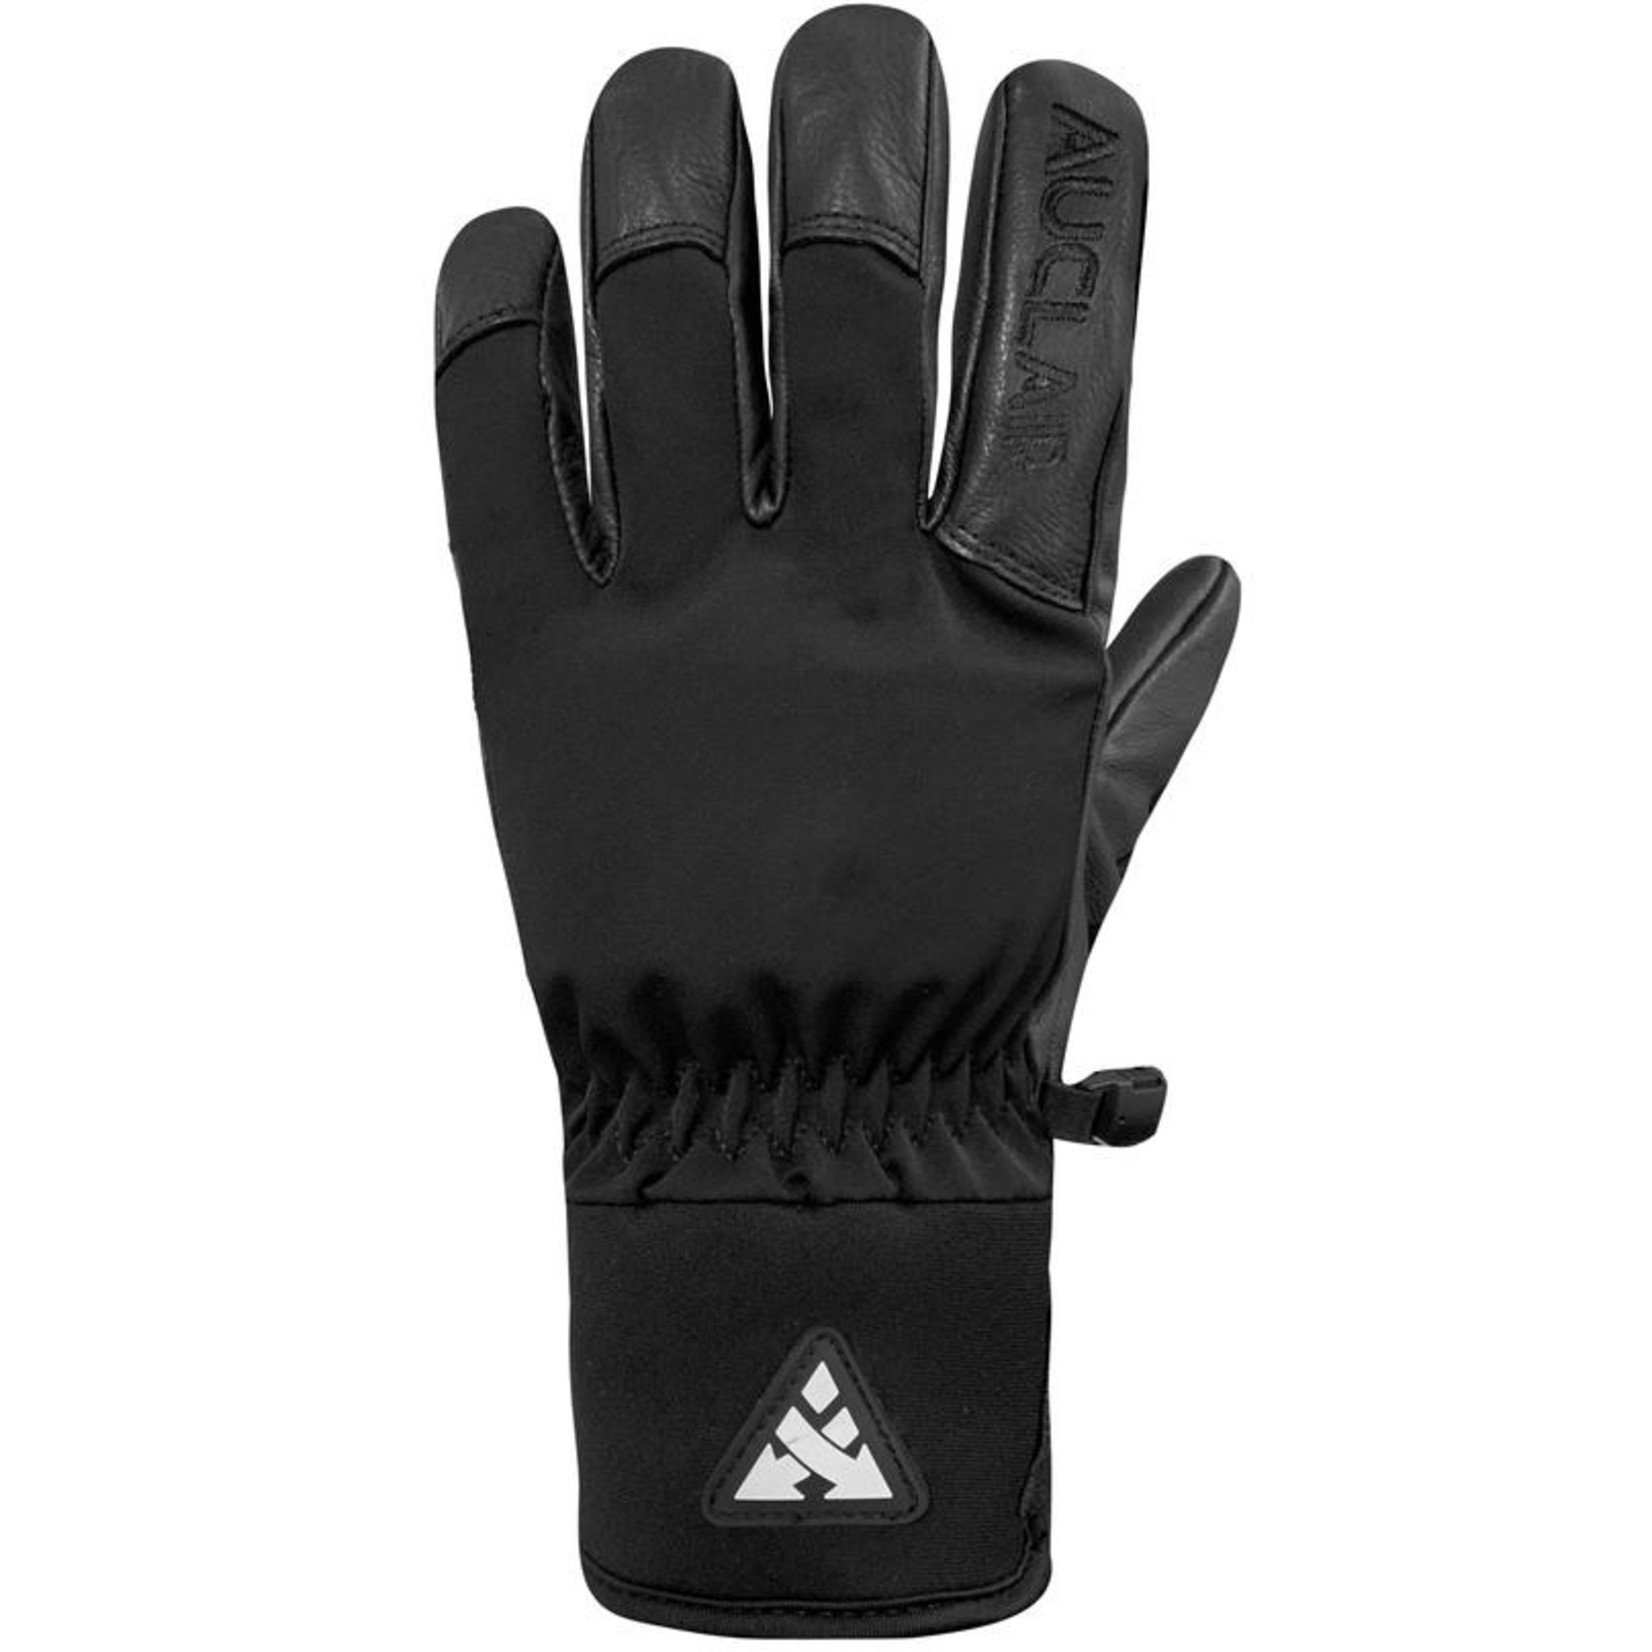 Auclair Auclair Team Worker II Glove Men's